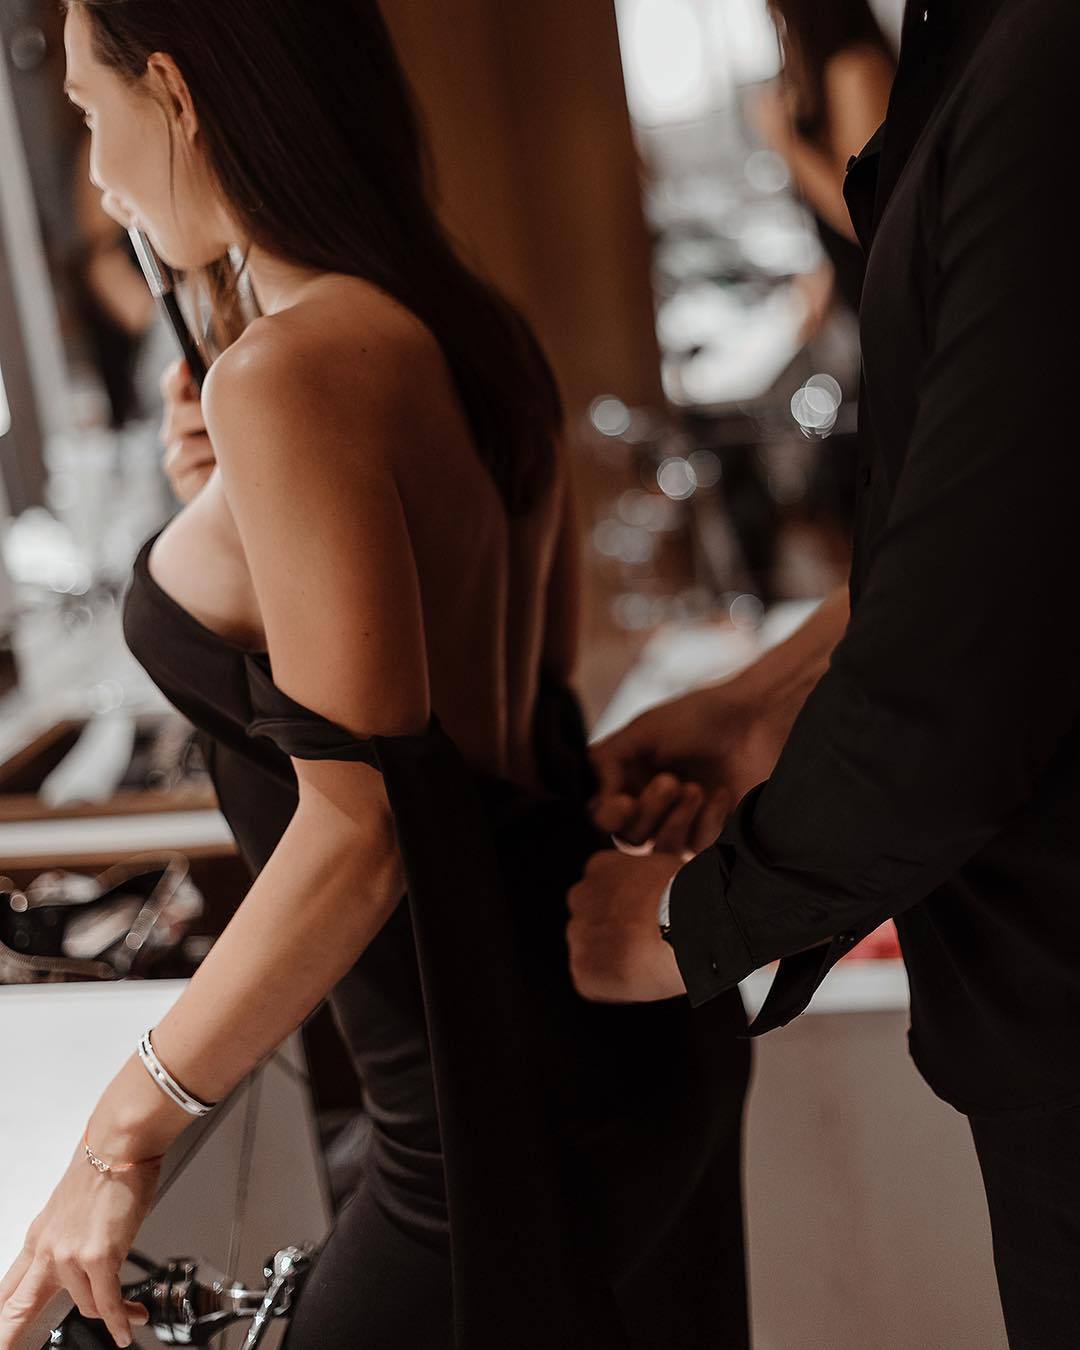 Брюнетка снимает платье перед бойфрендом порно фото бесплатно